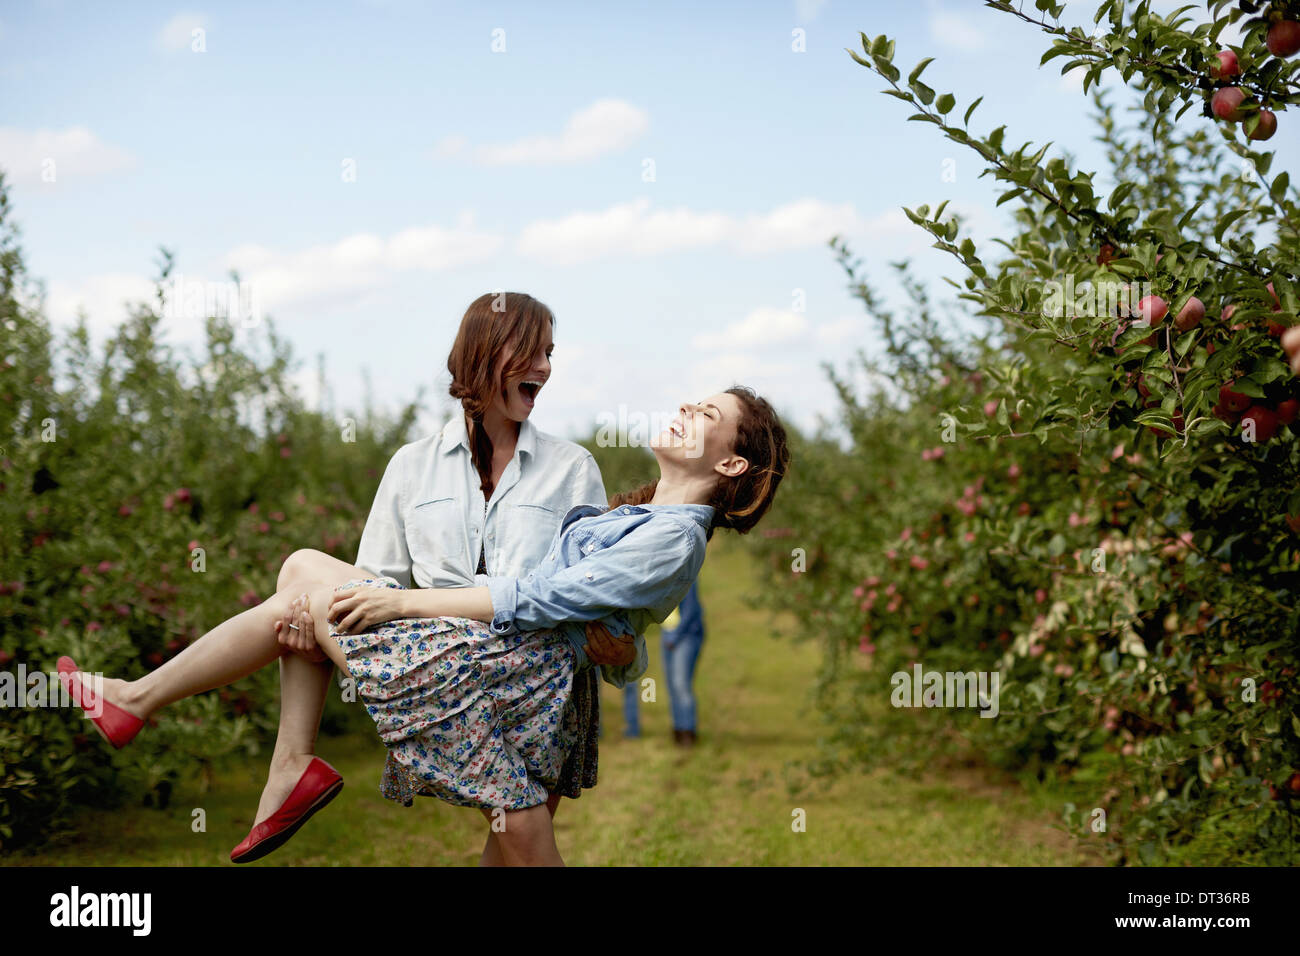 Reihen der Obstbäume in eine Bio-Obstgarten zwei junge Frauen, die eine mit dem anderen lachen Stockfoto